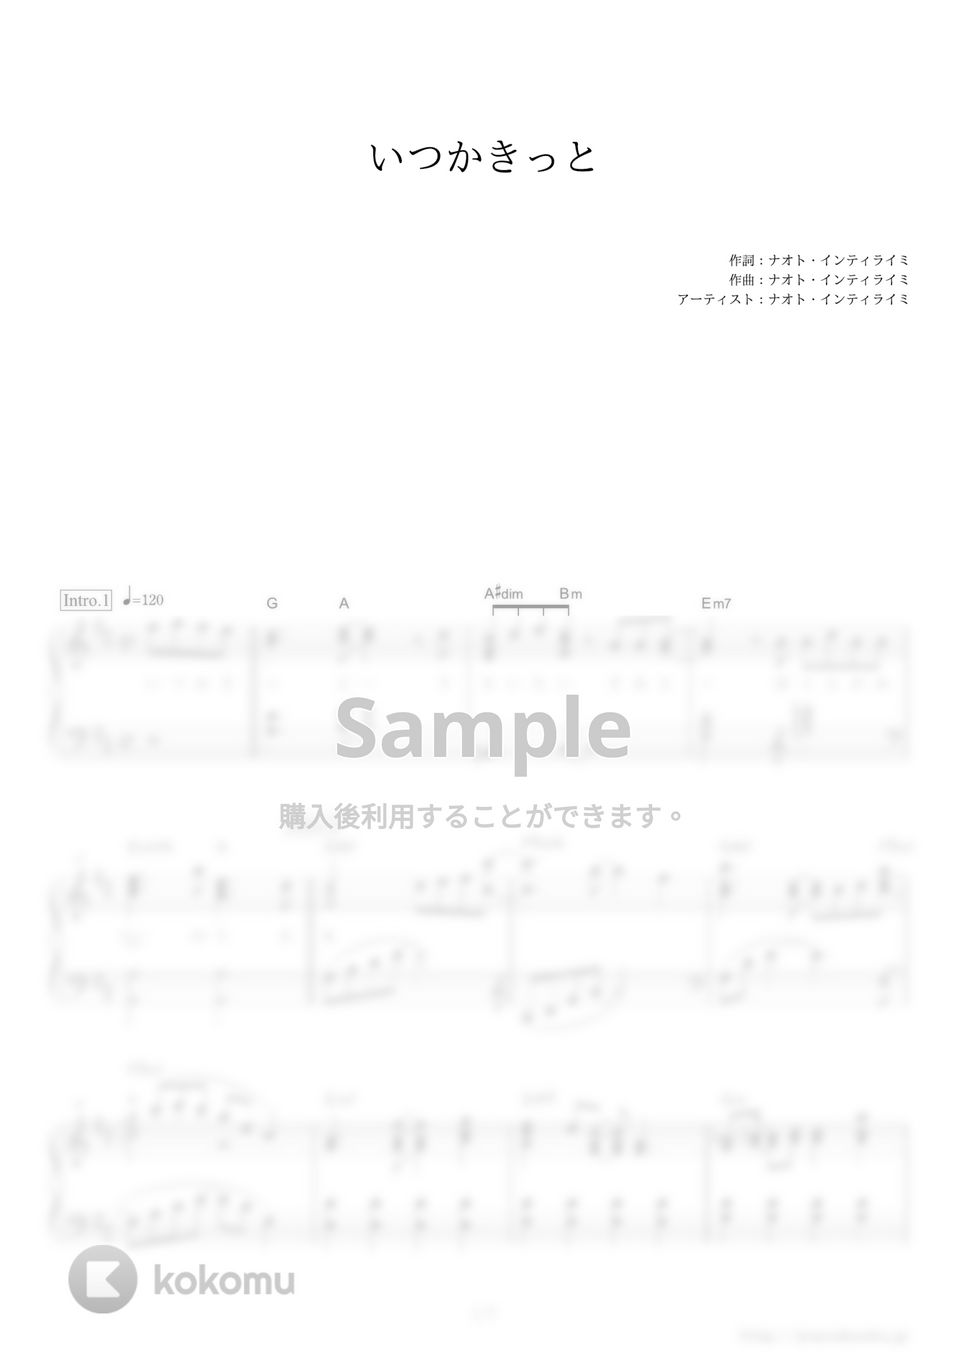 ナオト・インティライミ - いつかきっと (資生堂『SEABREEZE』CMソング) by ピアノの本棚